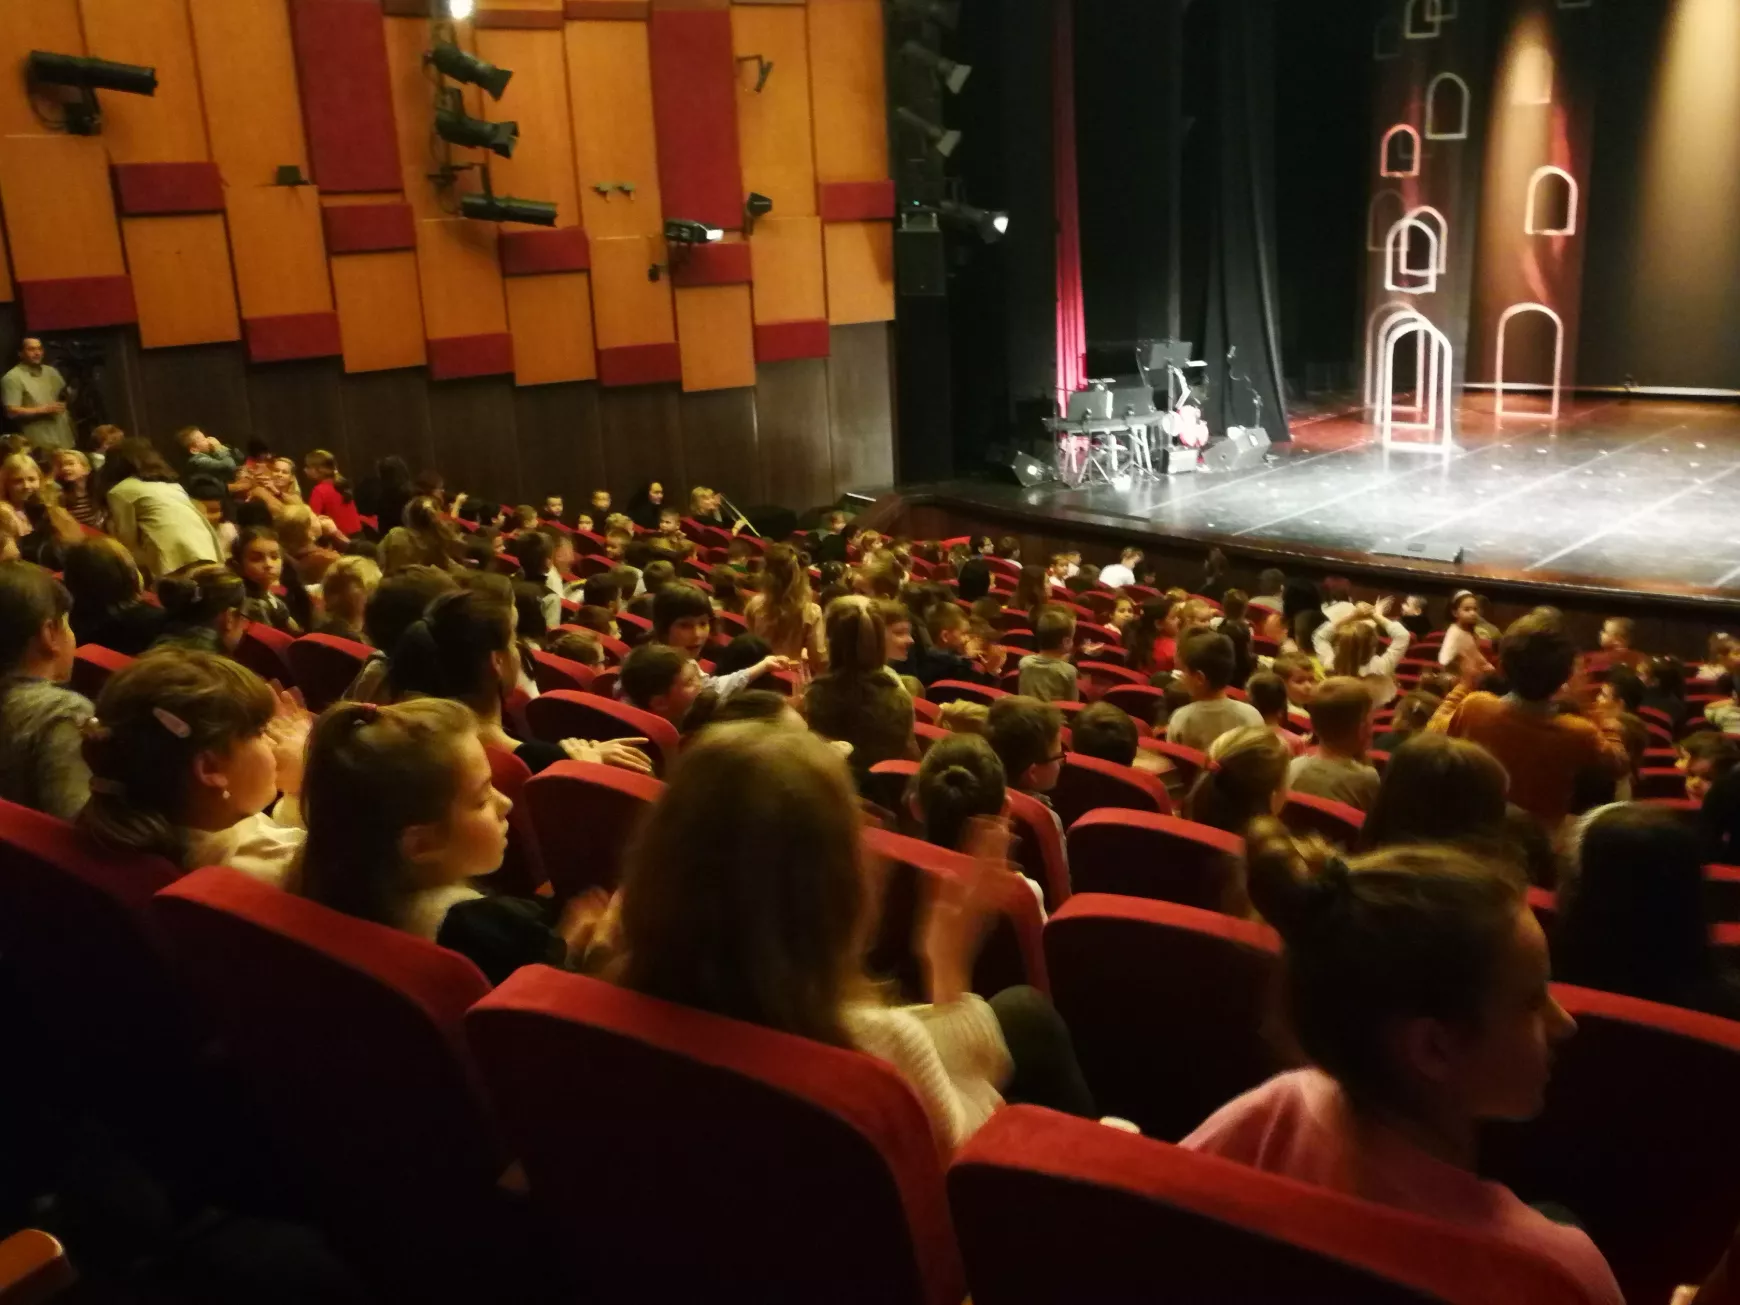 Tanulságosan szórakoztat Hapcikirály a Komáromi Jókai Színházban - KÉPEKKEL 